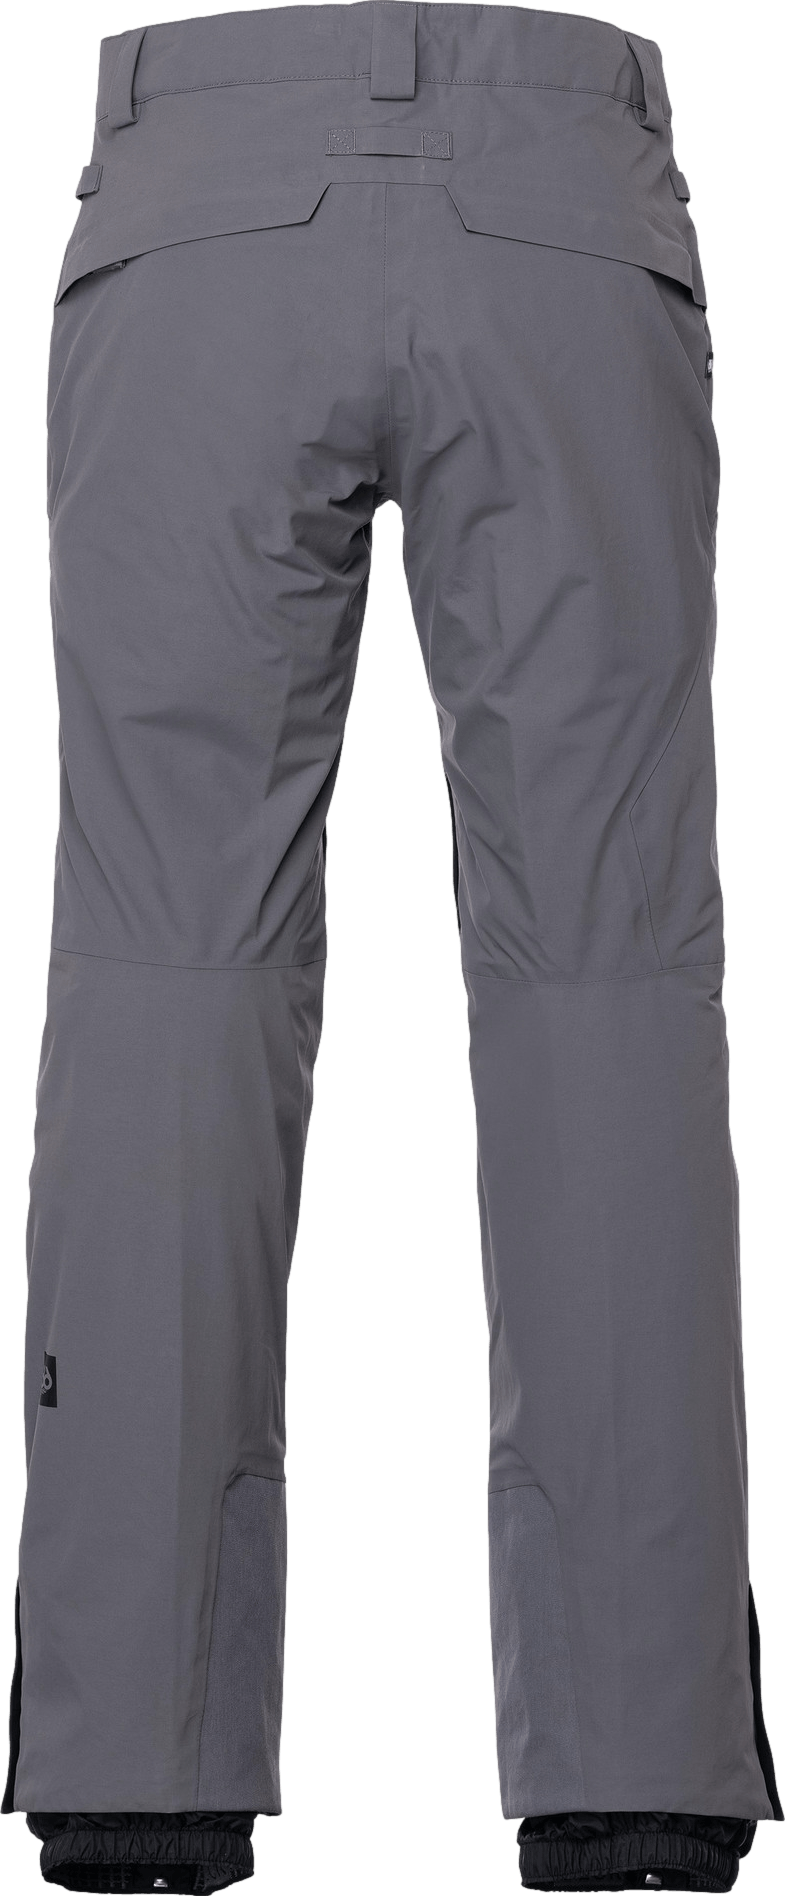 686 Men's GORE-TEX GT Pants